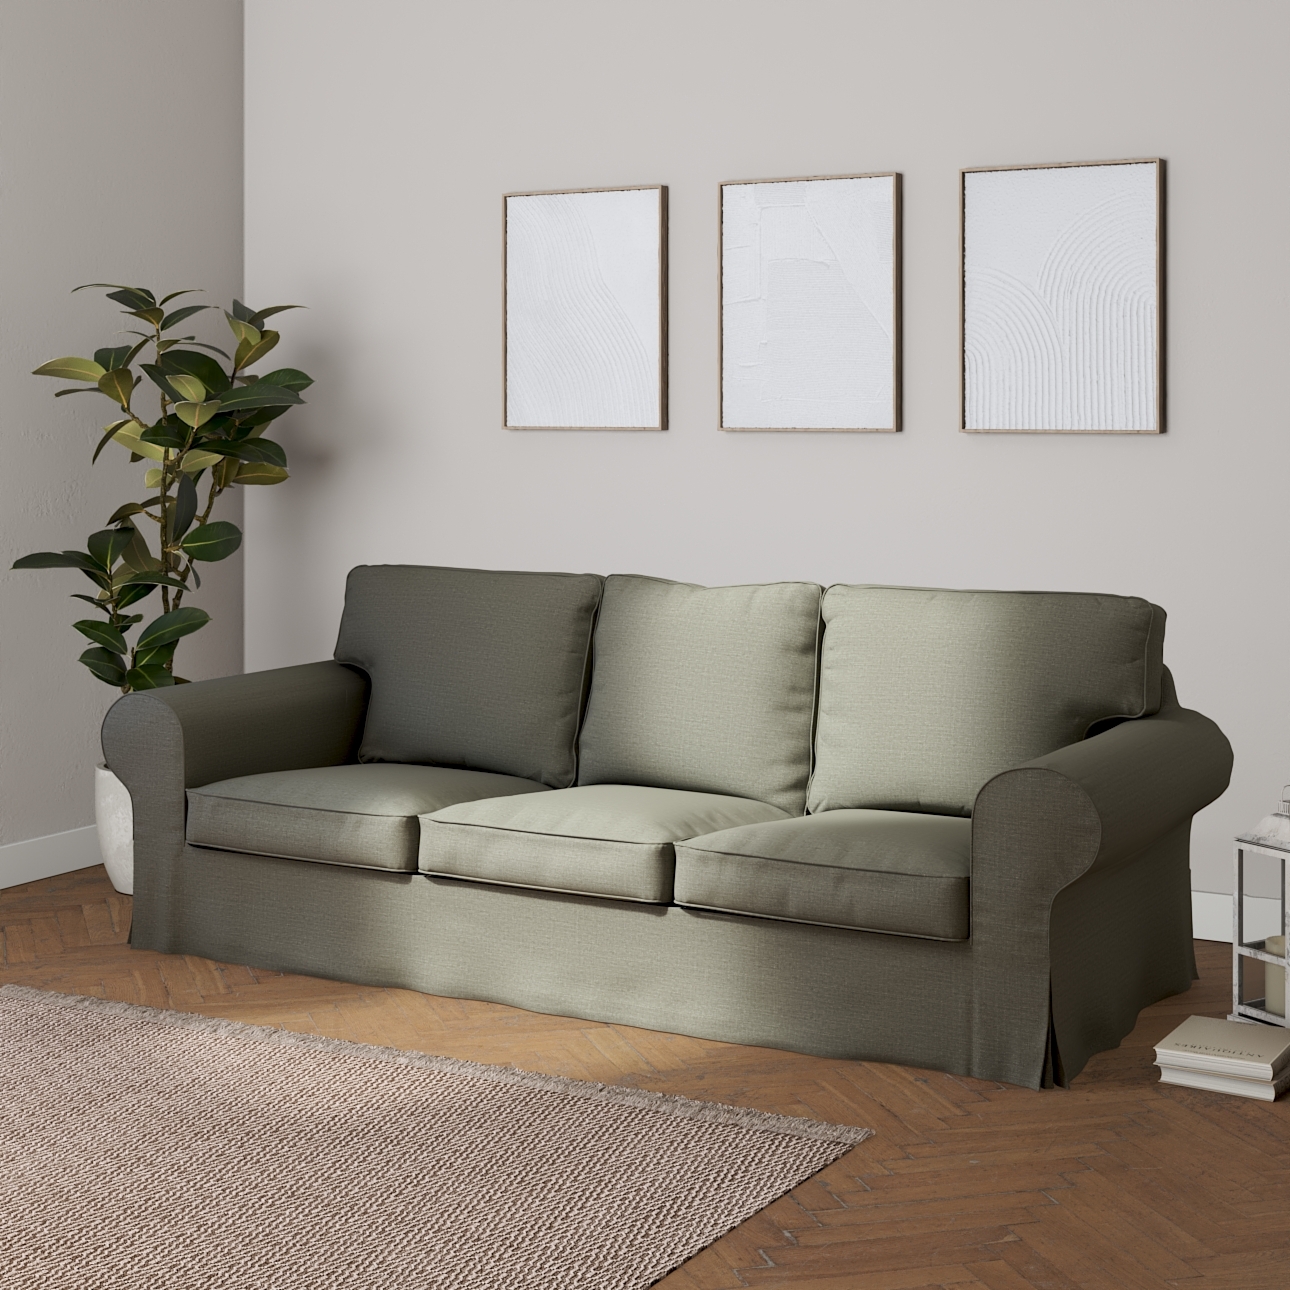 Bezug für Ektorp 3-Sitzer Sofa nicht ausklappbar, grau-beige, Sofabezug für günstig online kaufen